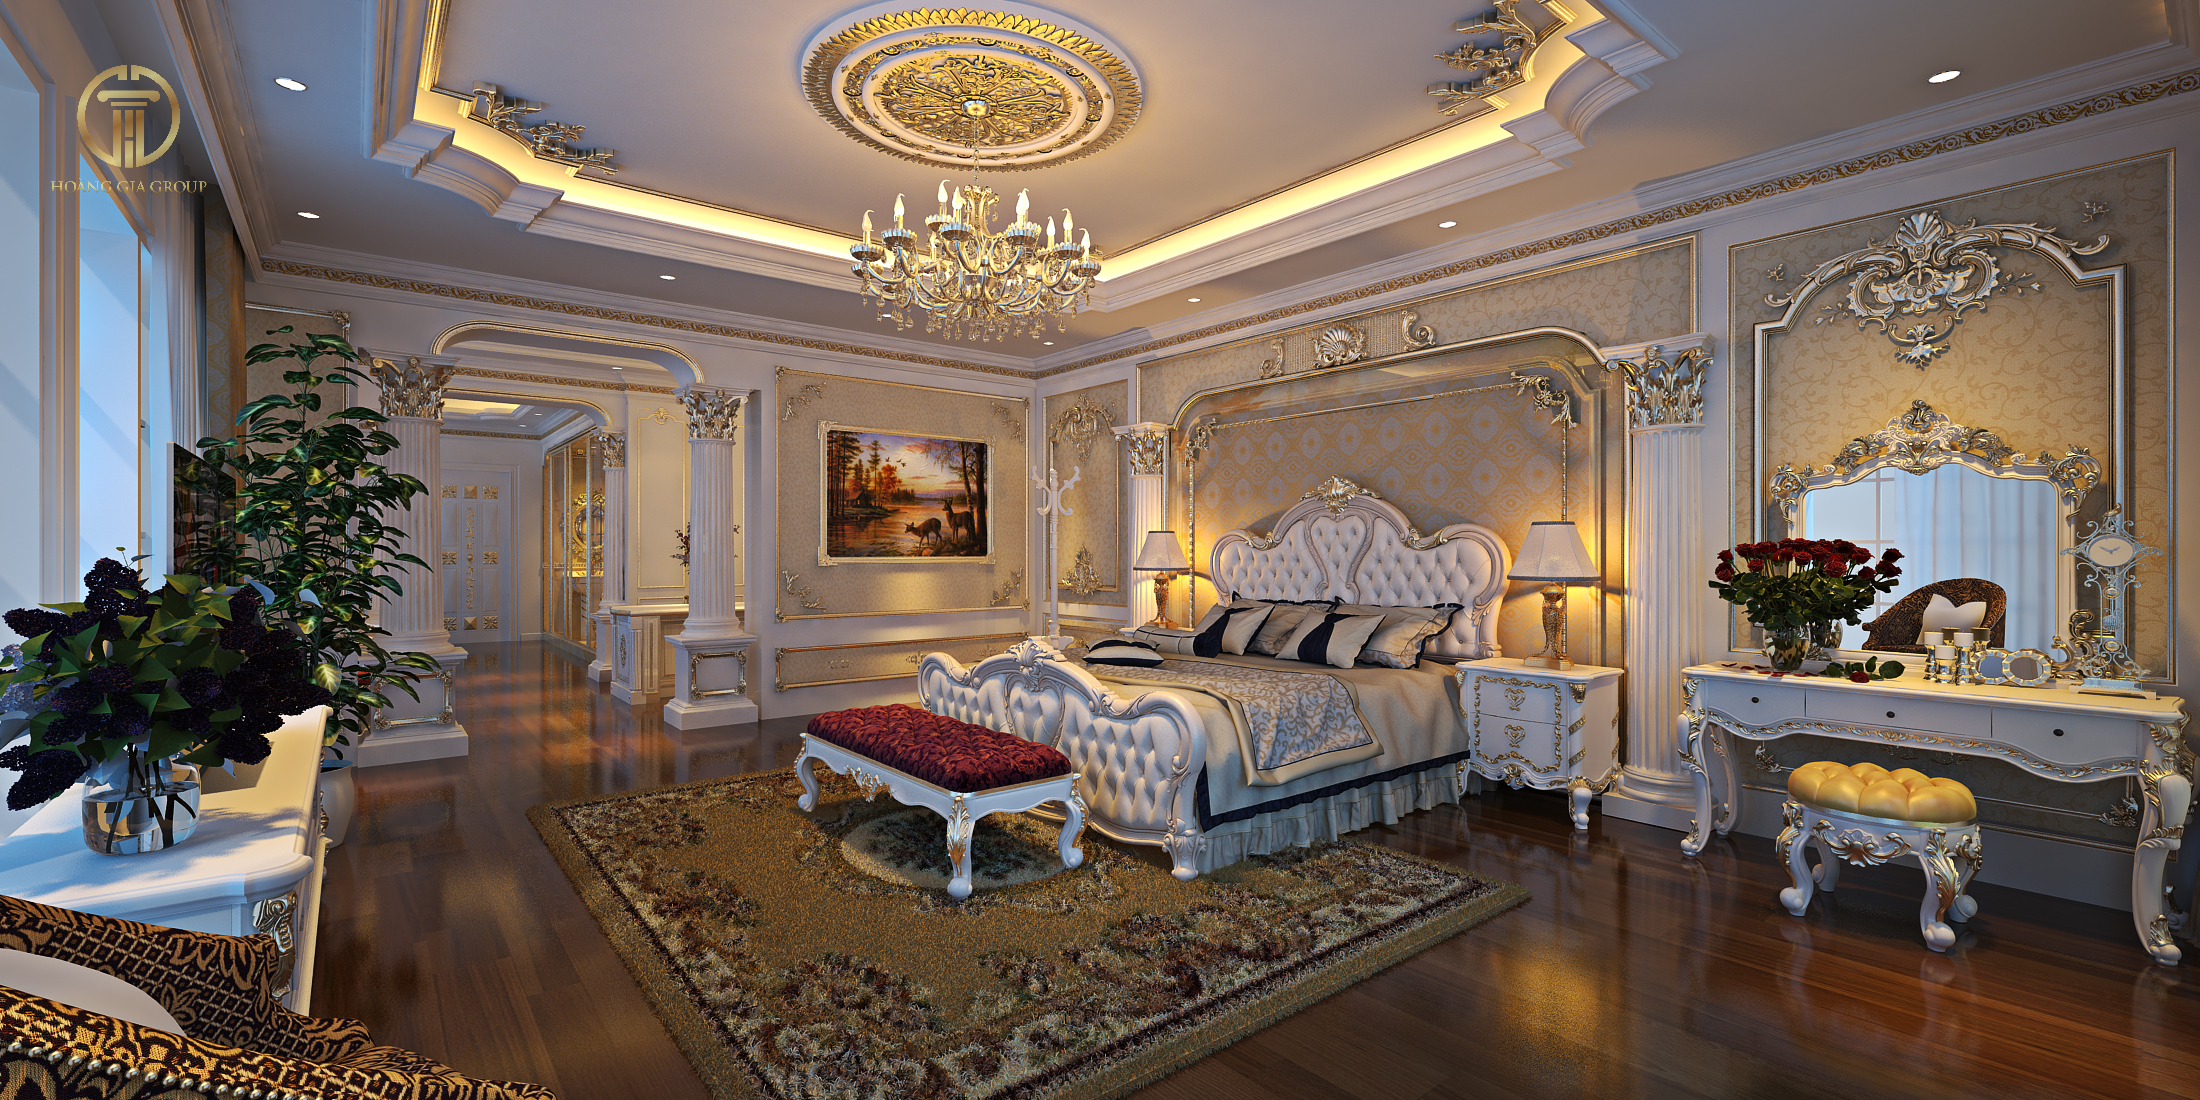 Mẫu phòng ngủ tân cổ điển với diện tích rộng cùng thiết kế cầu kỳ, sang trọng